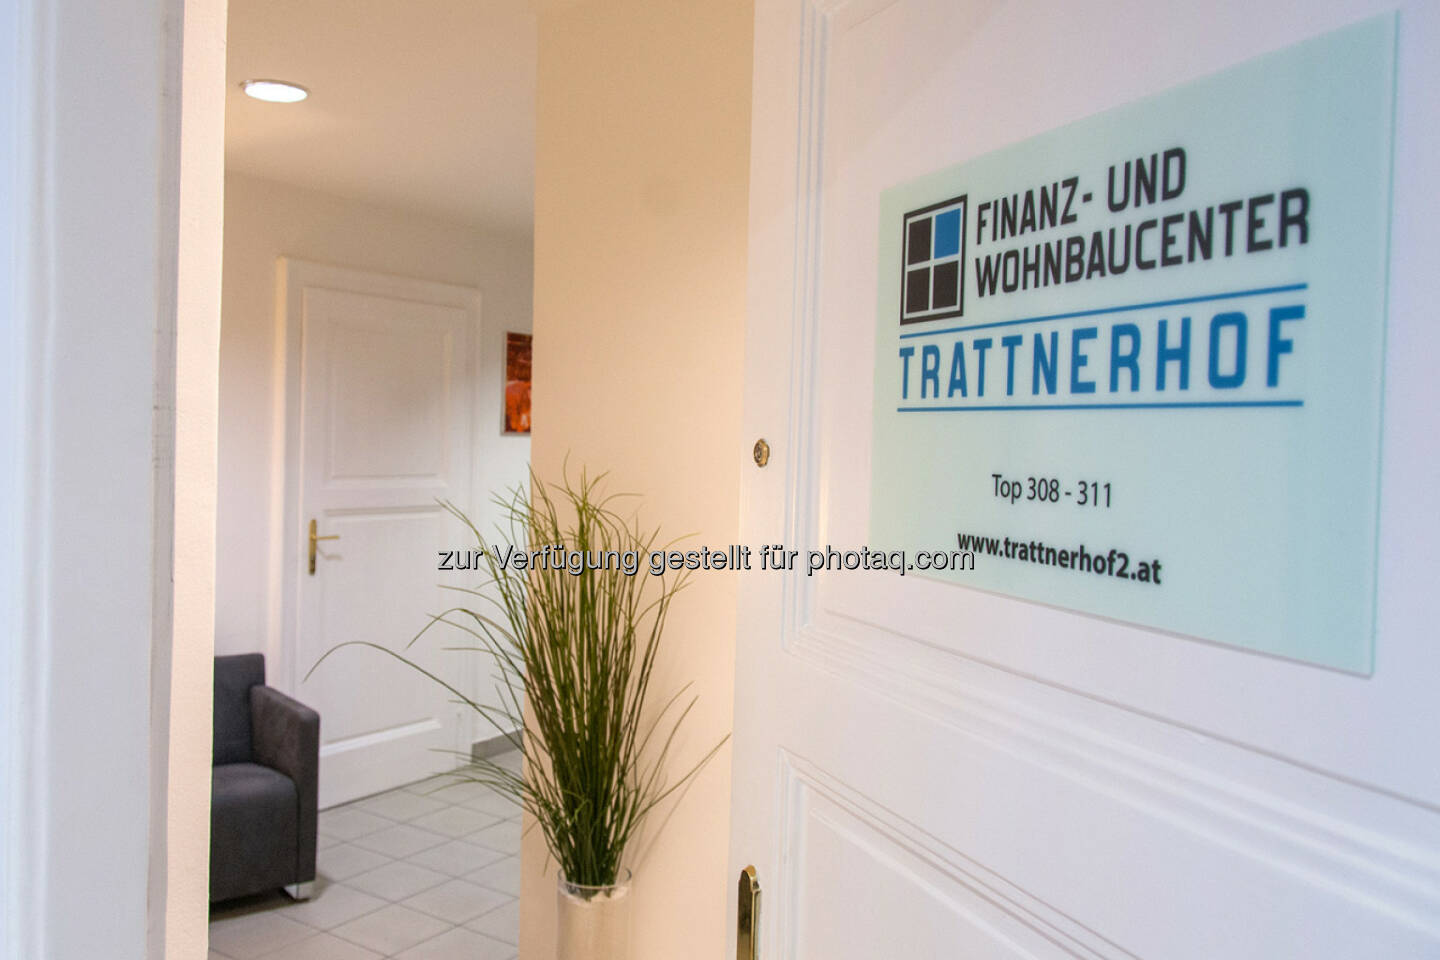 Finanz- und Wohnbaucenter Trattnerhof eröffnet: Eingangsbereich Finanz- und Wohnbaucenter Trattnerhof 2